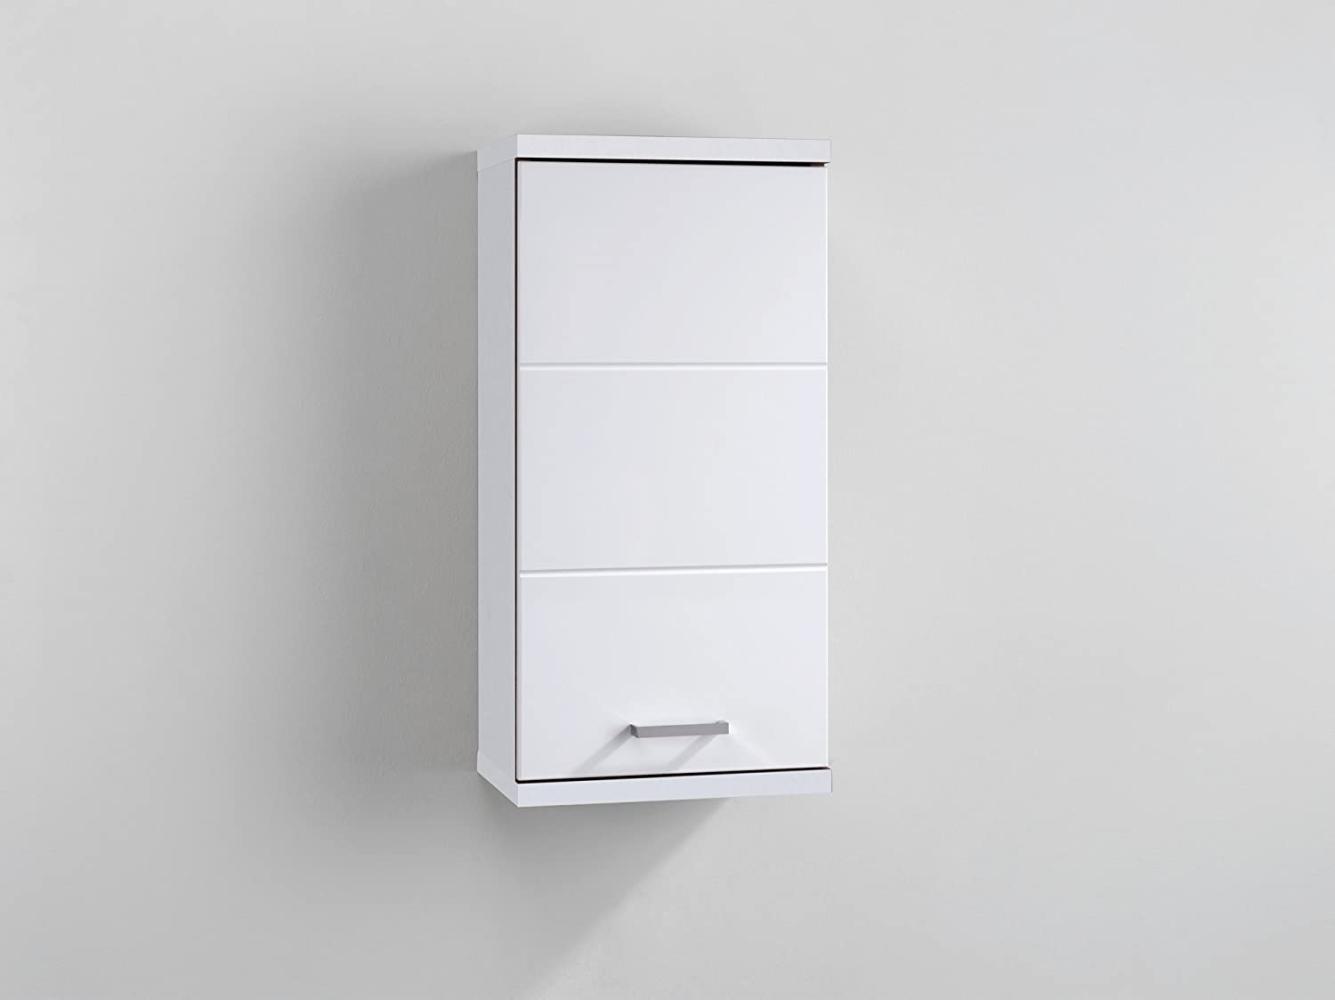 HOMEXPERTS Badezimmer Wandschrank NUSA / Moderner Badhängeschrank in Hochglanz Weiß lackiert / mit silbernem Türgriff / rechtsseitiger Türanschlag / 35. 5 x 24. 5 x 73 cm (B x T x H) Bild 1